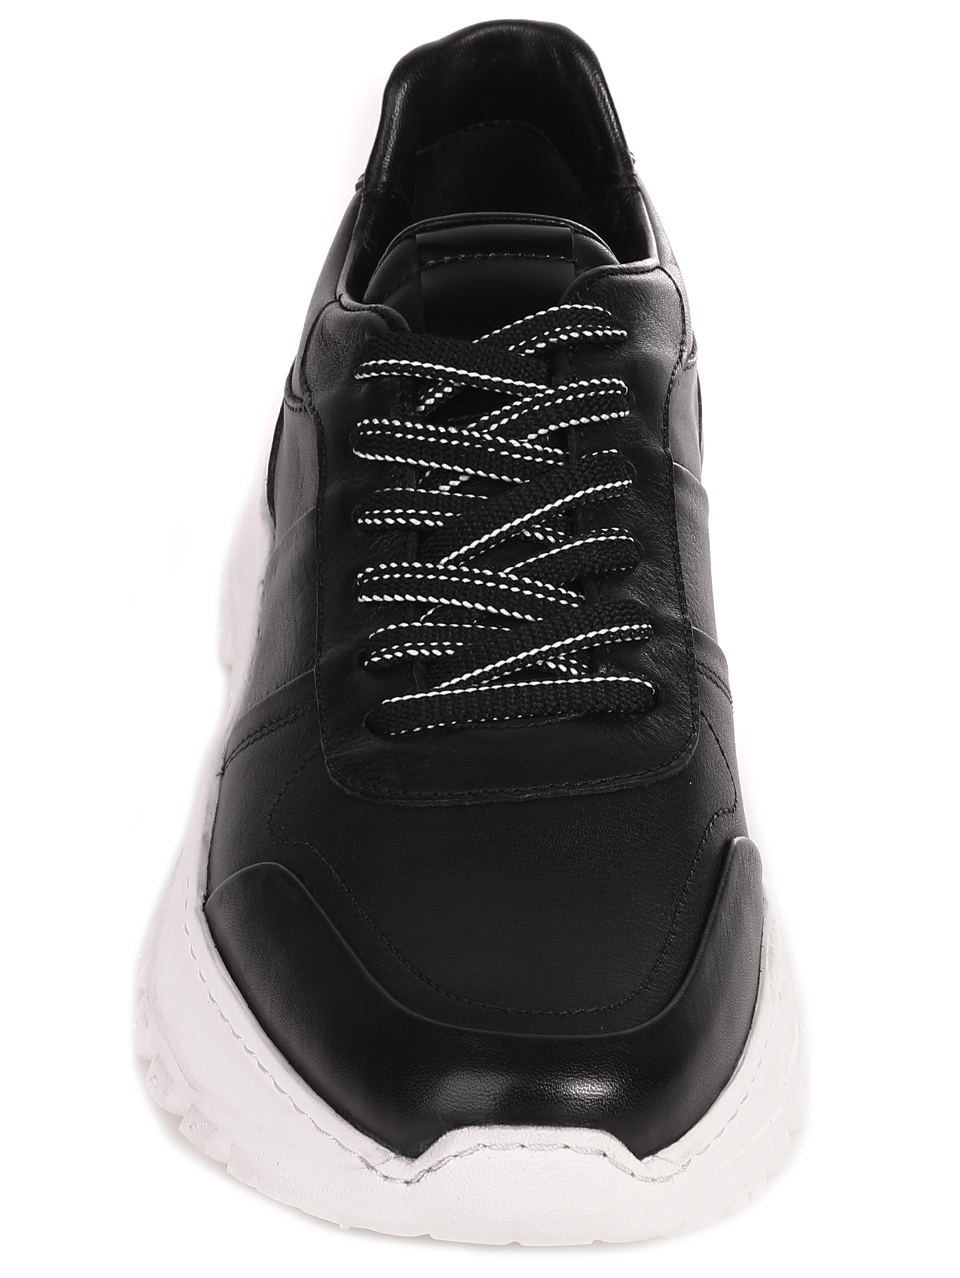 Ежедневни мъжки обувки от естествена кожа 152-19202 S-2 black